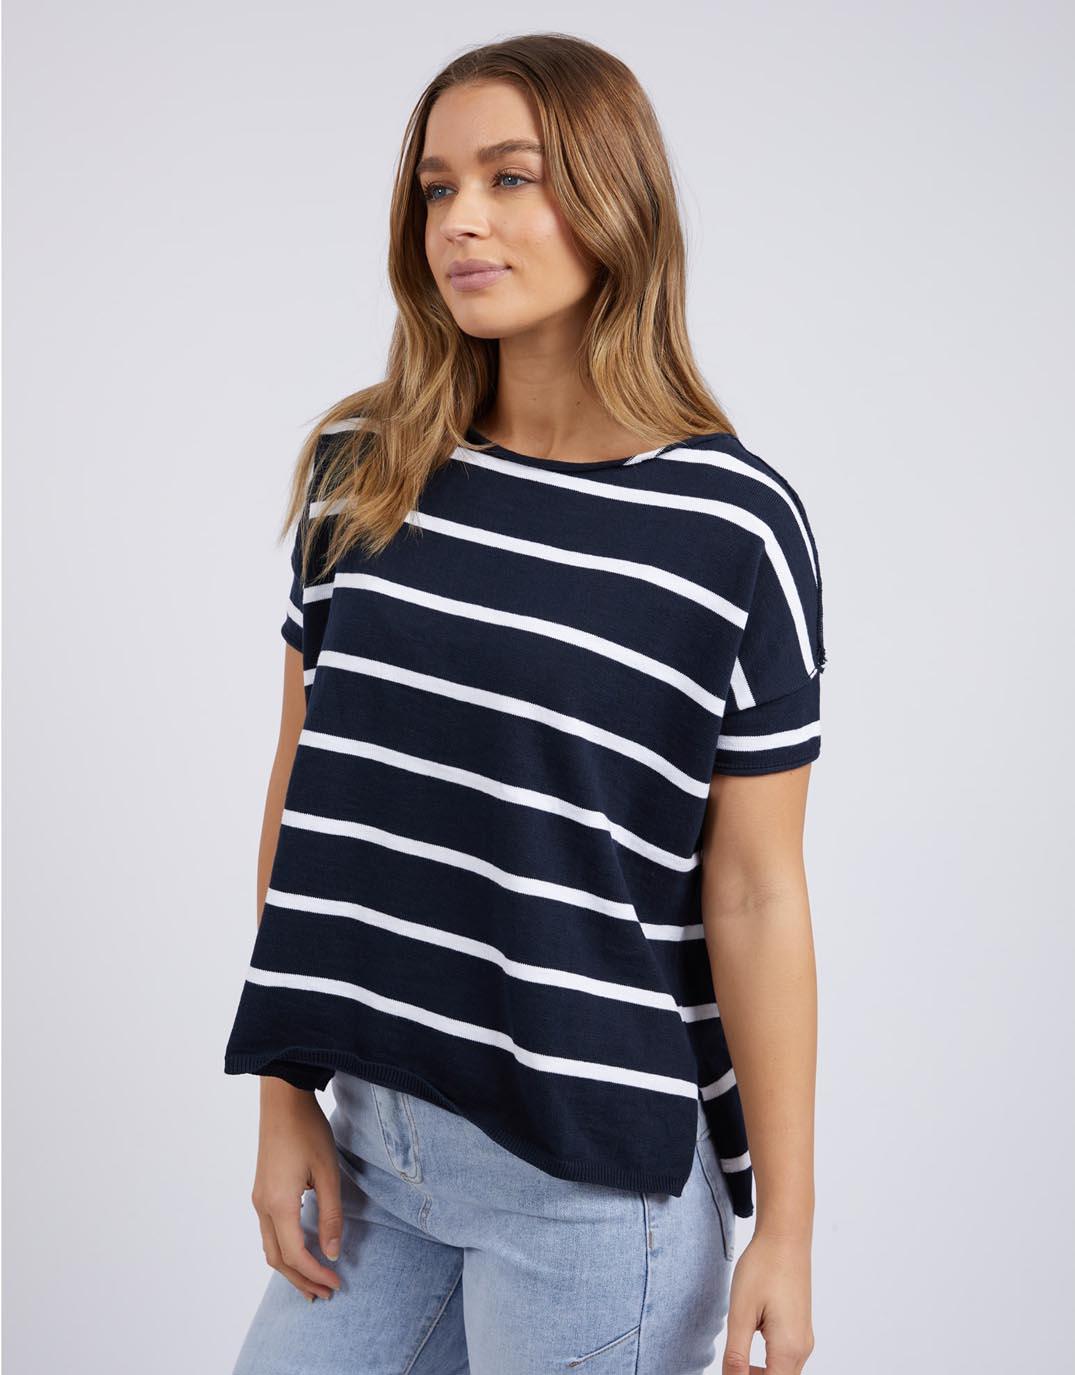 Foxwood - Tahlia Stripe Tee - Navy & White Stripe - White & Co Living Tops